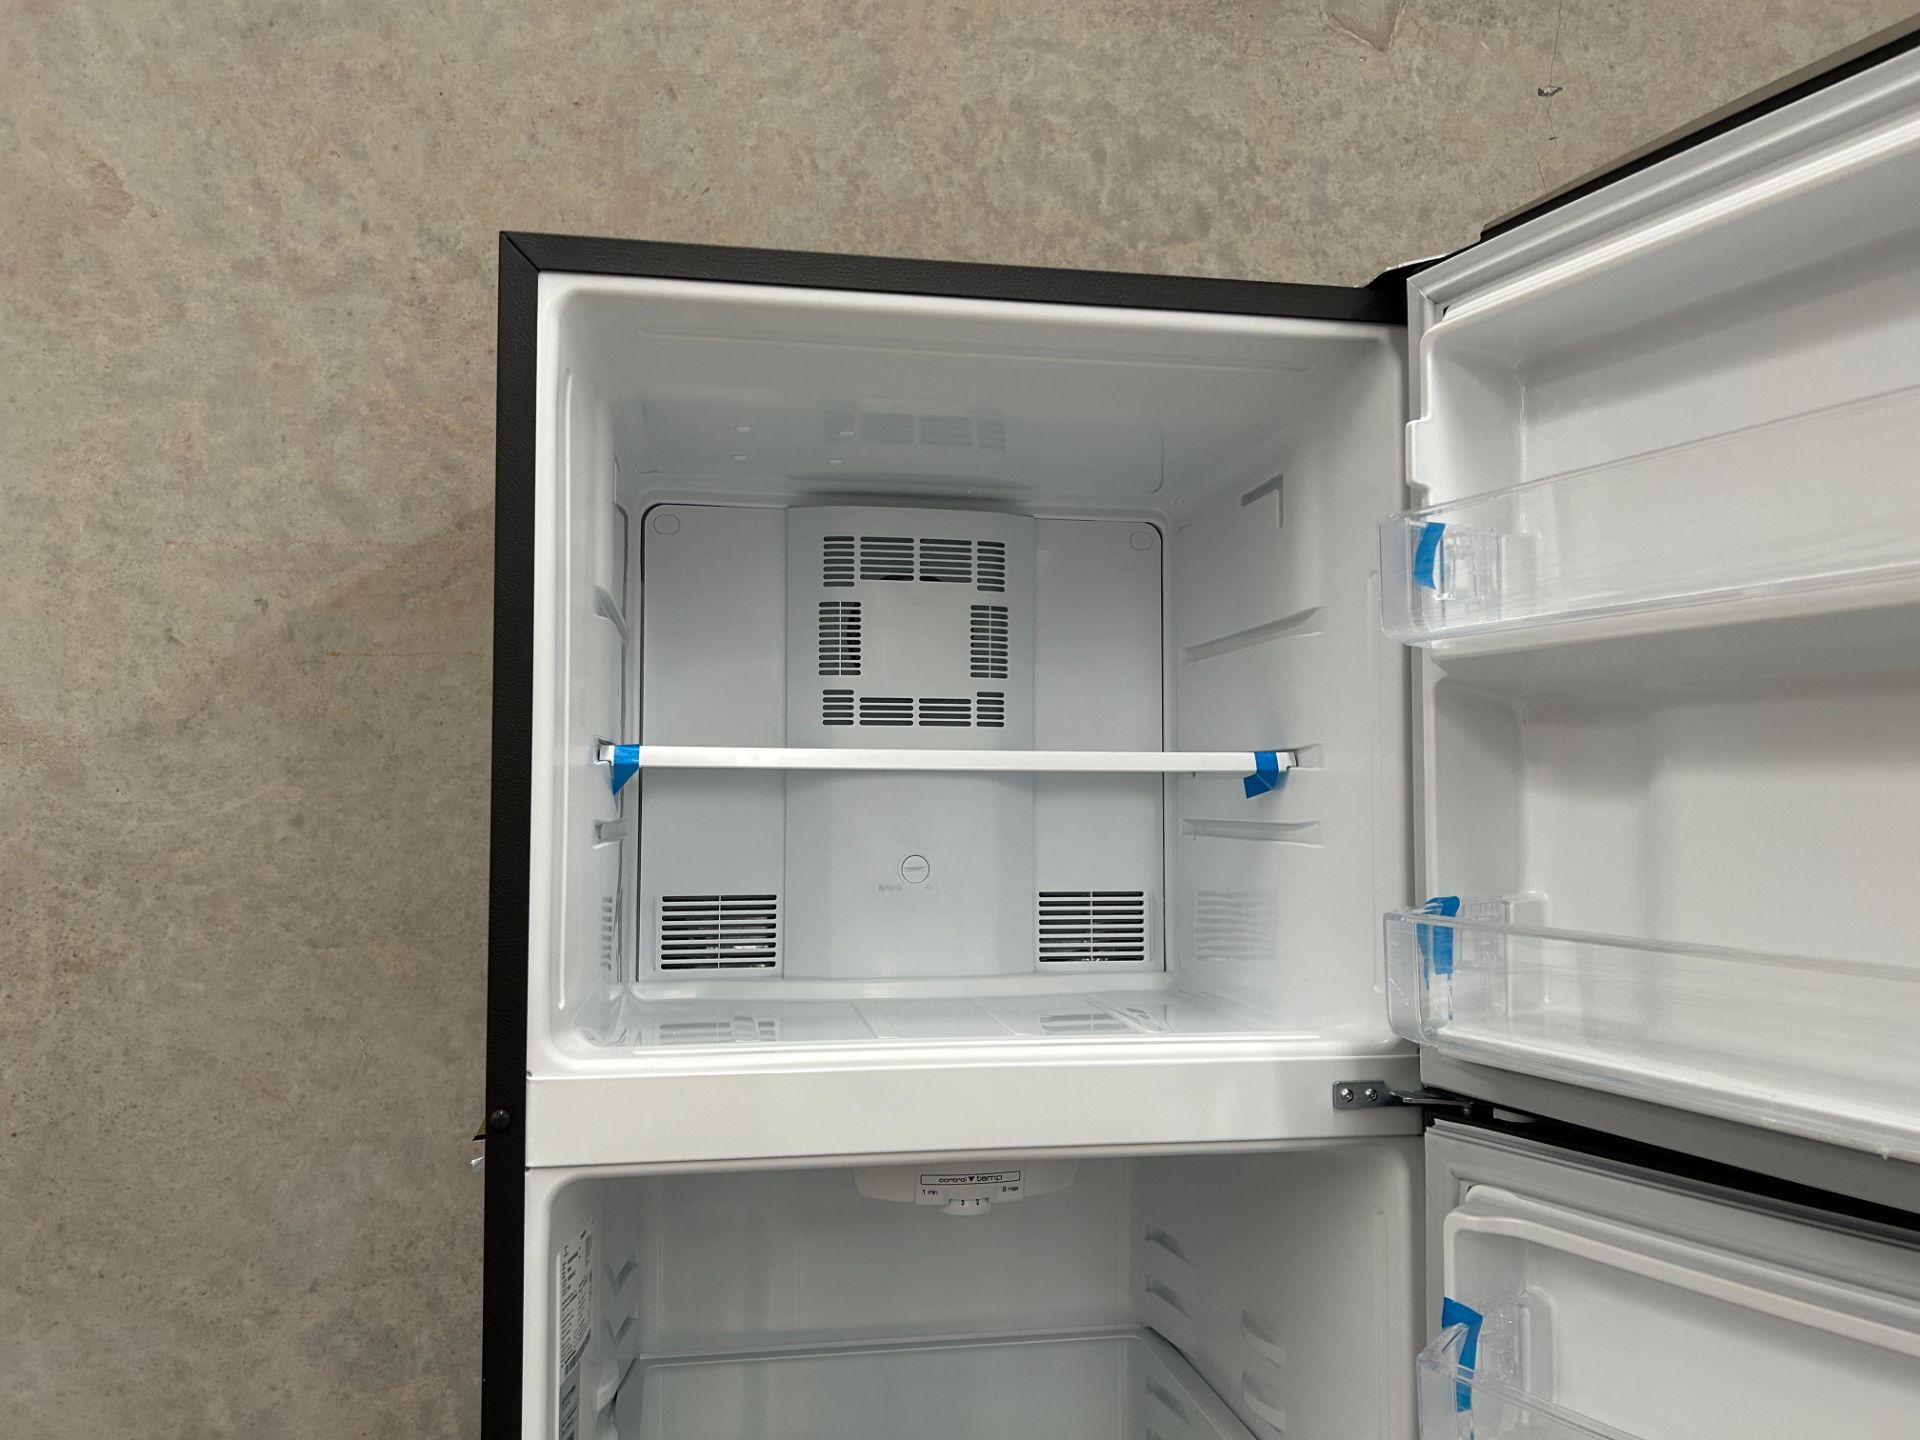 Lote de 2 Refrigeradores contiene: 1 Refrigerador Marca MABE, Modelo RME360PVMRM0, Serie 21969, Col - Image 7 of 15